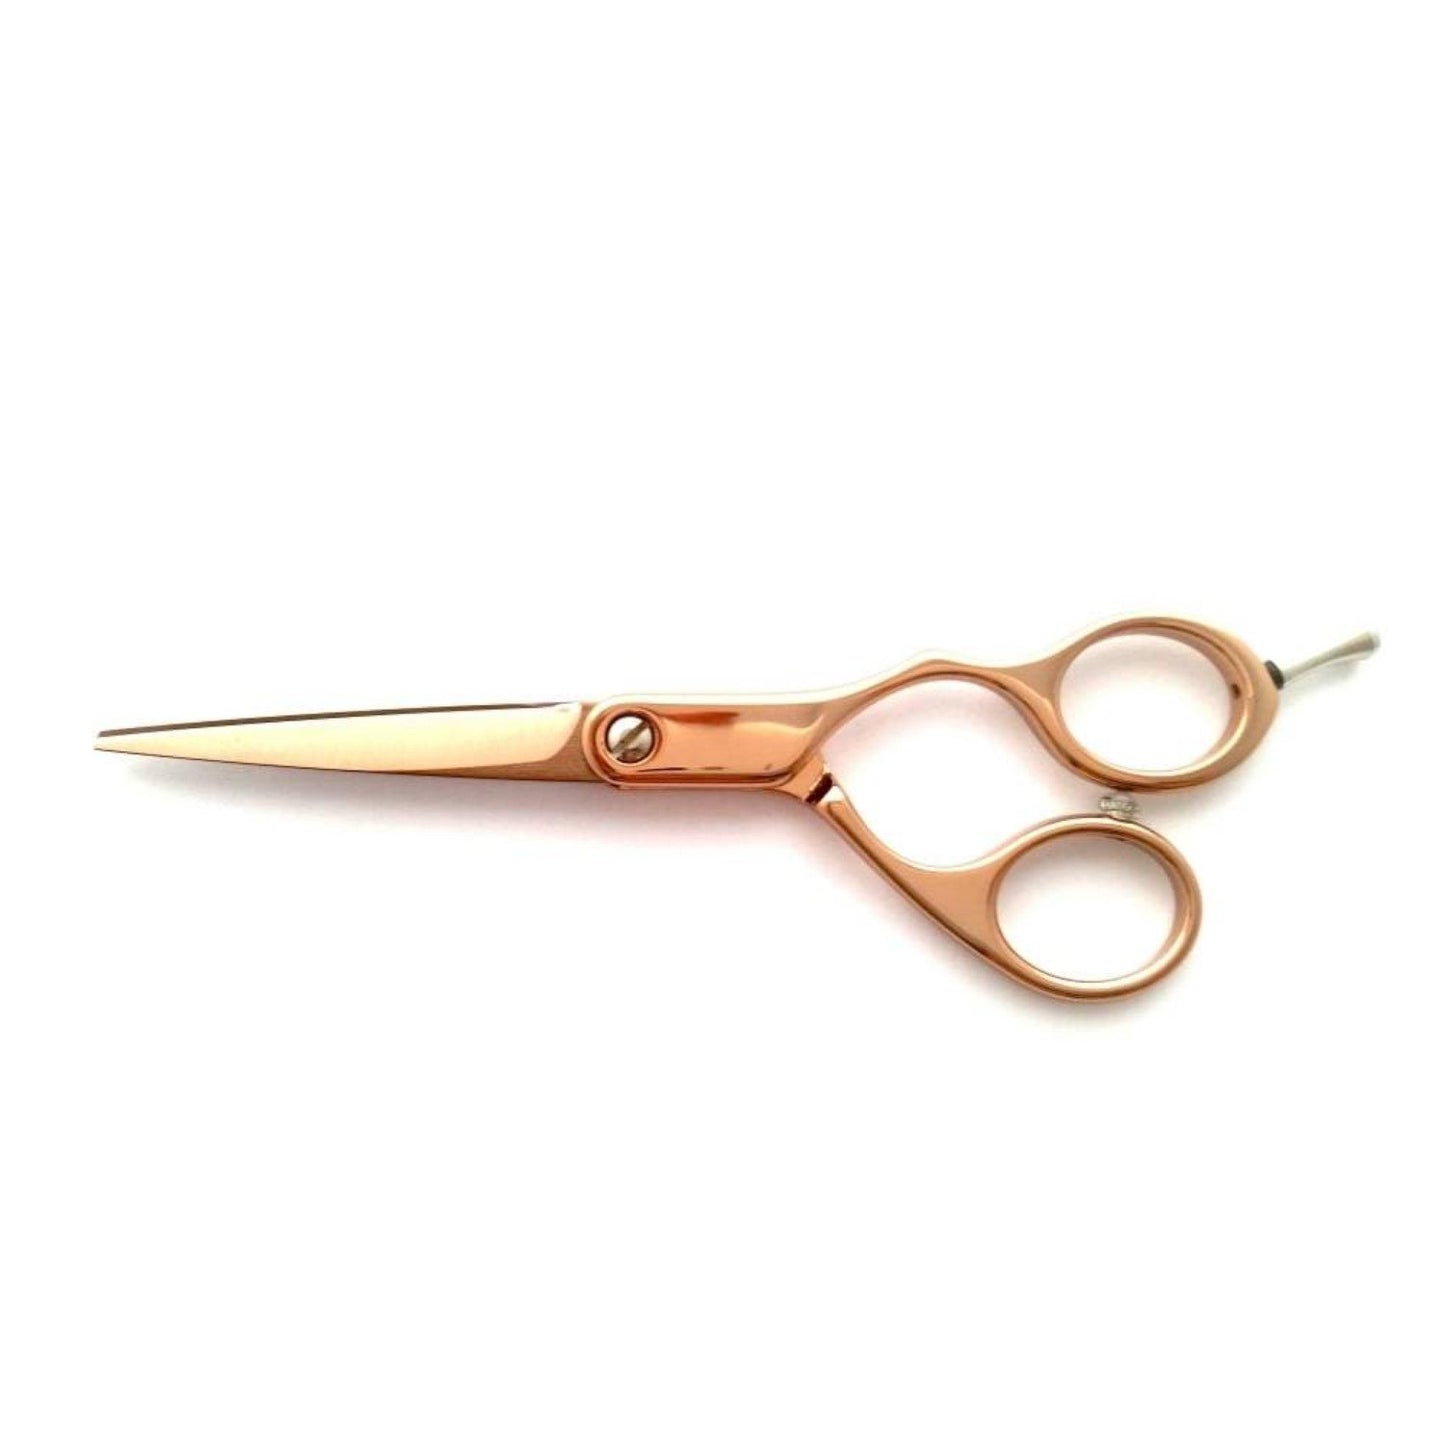 Rand Rocket 5.5" STR Rose Gold Hairdressing Scissors (SHOP)